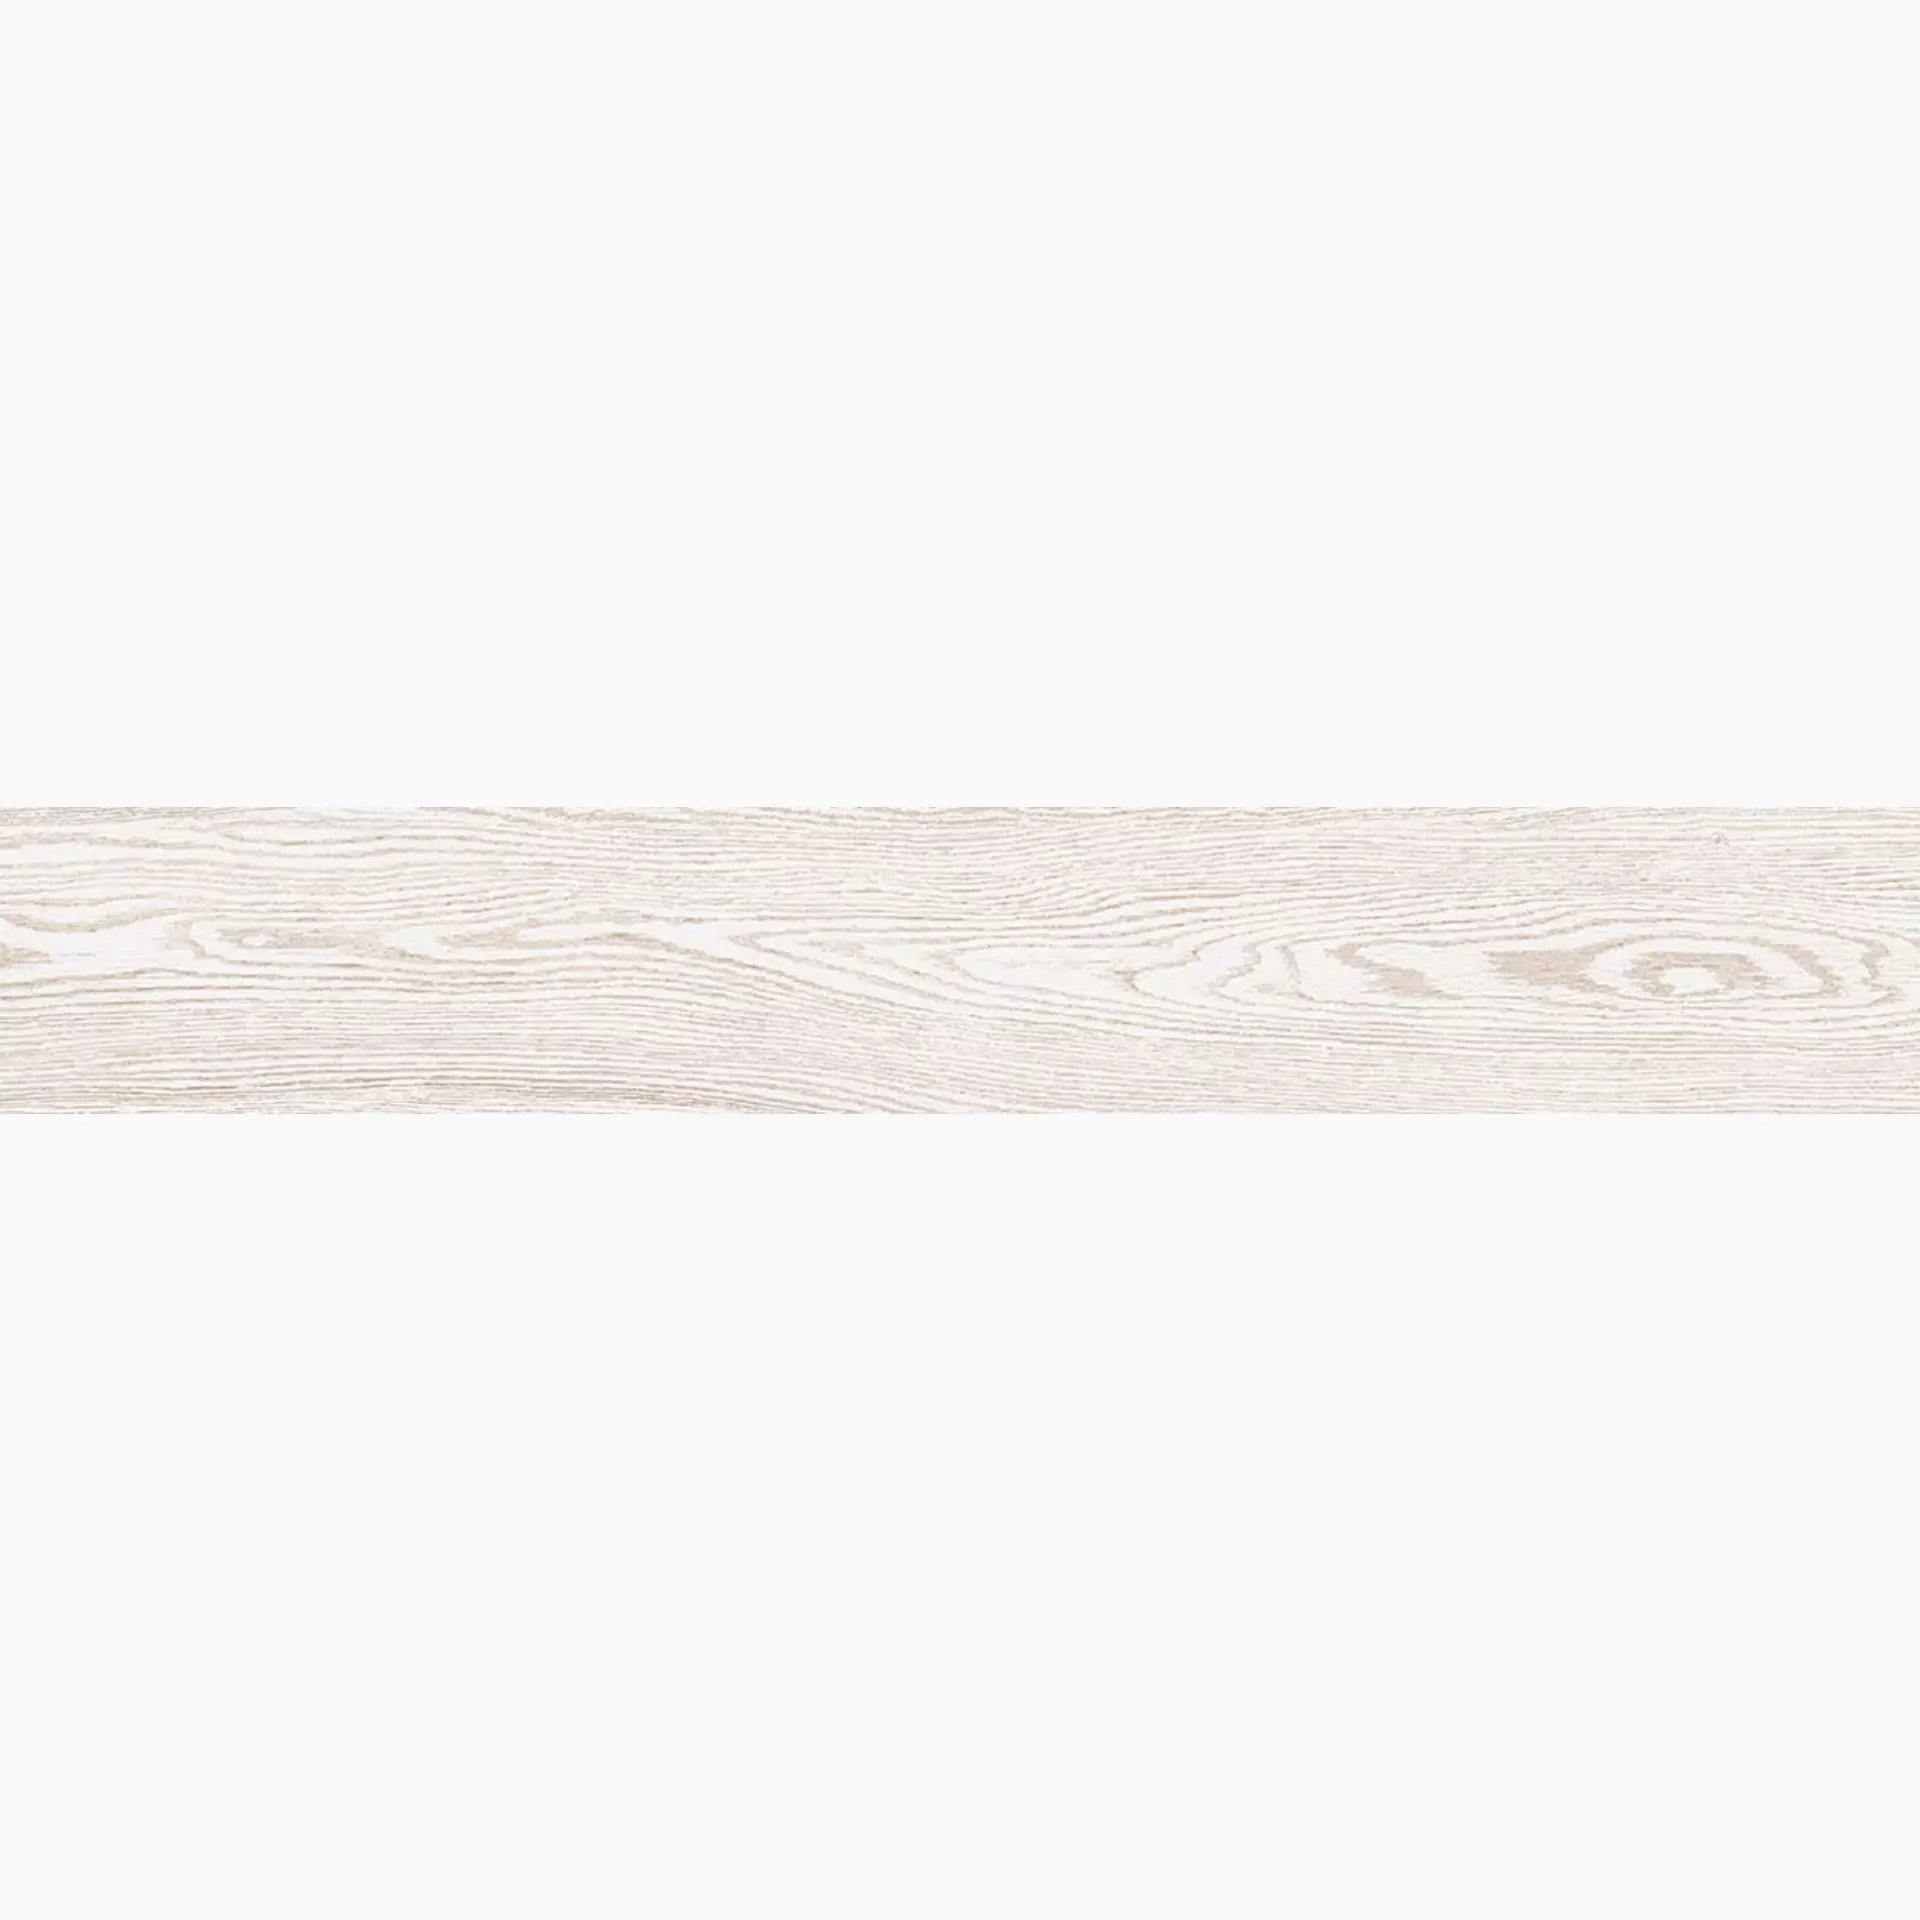 La Faenza Legno White Natural Slate Cut Matt 168057 20x120cm rectified 10mm - LEGNO 2012W RM